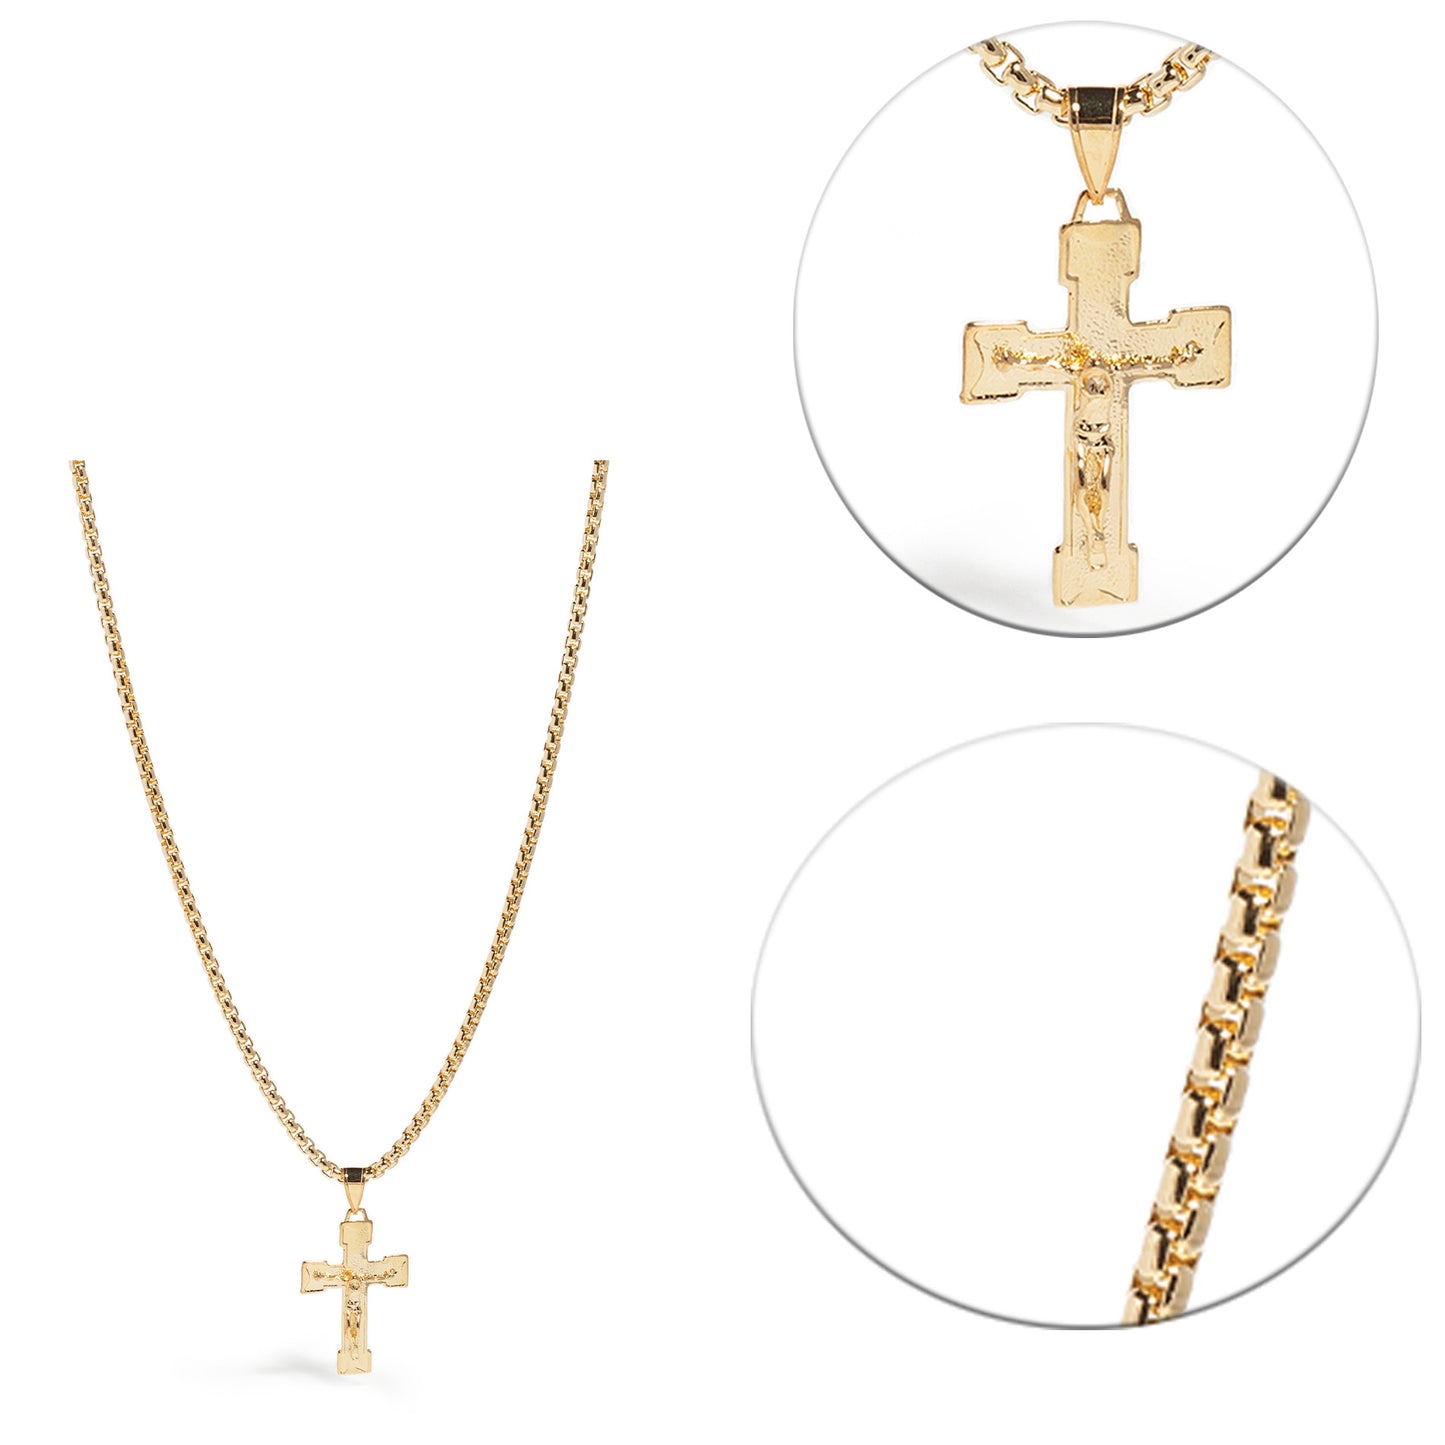 20" Gold Cross Pendant Men's Necklace